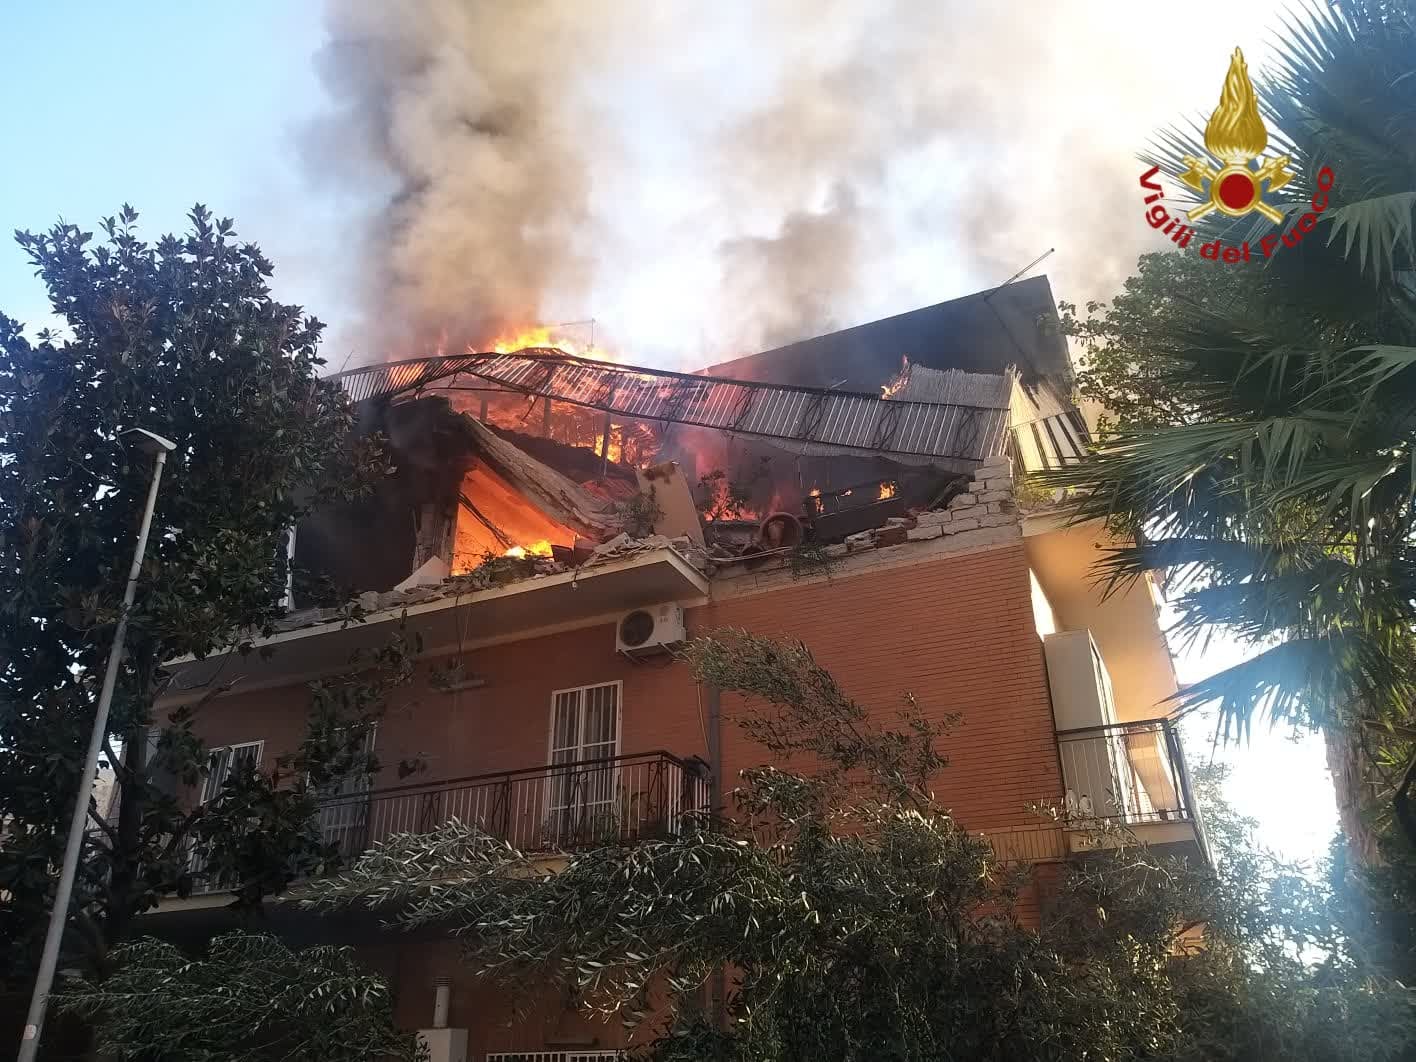 Roma: crolla palazzina in seguito a esplosione, almeno 4 feriti e si cercano eventuali dispersi